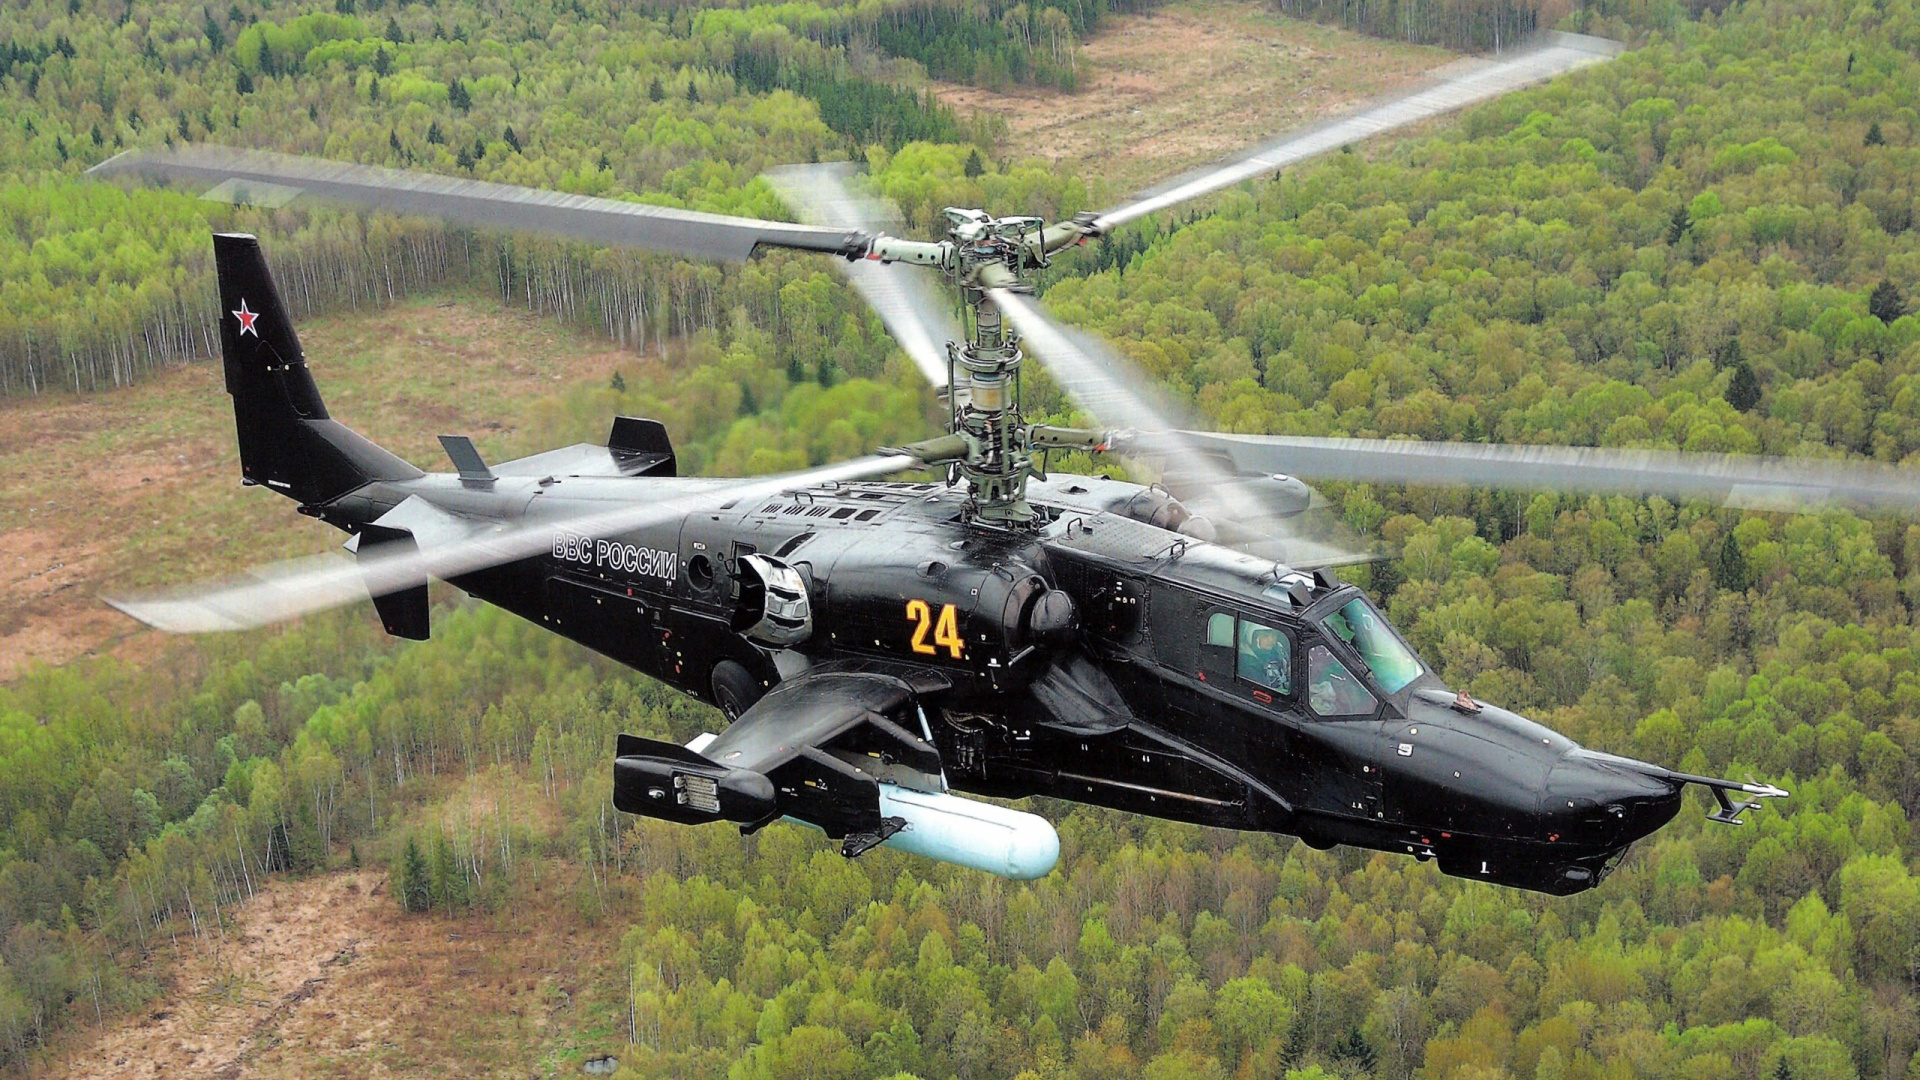 攻击直升机, 卡莫夫, 武装直升机, 直升机, 直升机转子的 壁纸 1920x1080 允许